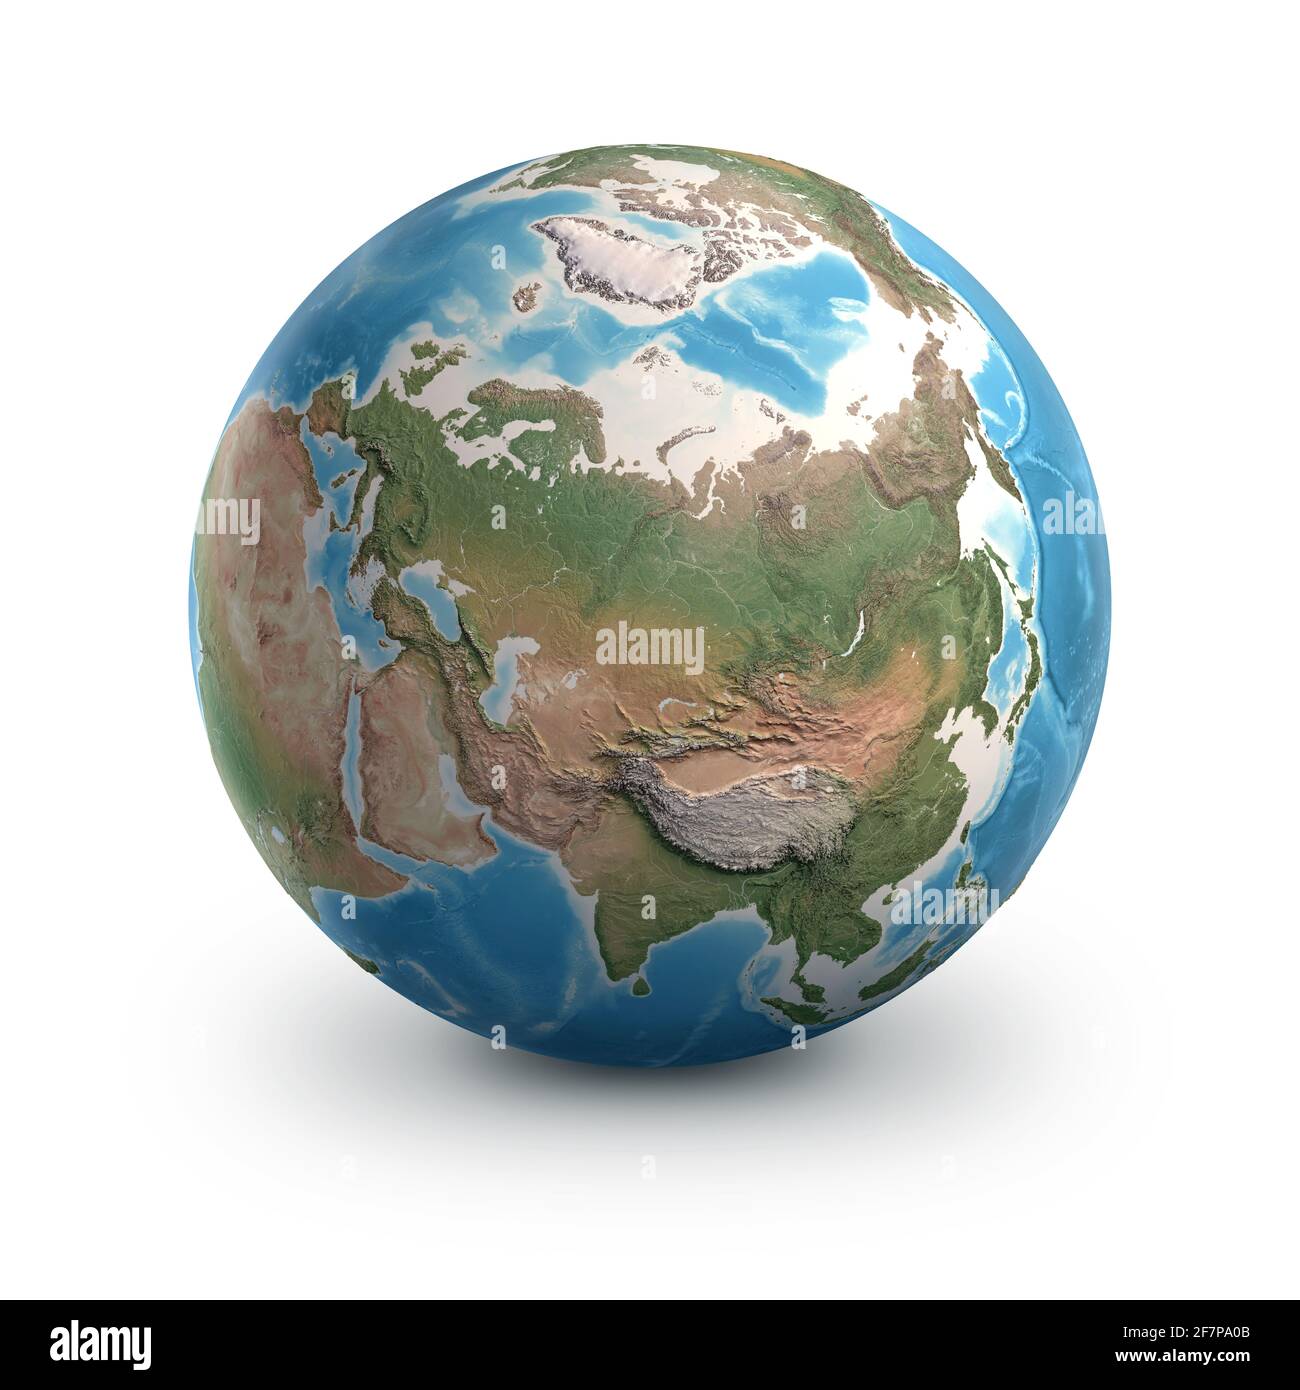 Planet Erdkugel, isoliert auf Weiß. Geographie der Welt aus dem All, fokussiert auf Russland und die arktische Region - Elemente, die von der NASA eingerichtet wurden Stockfoto